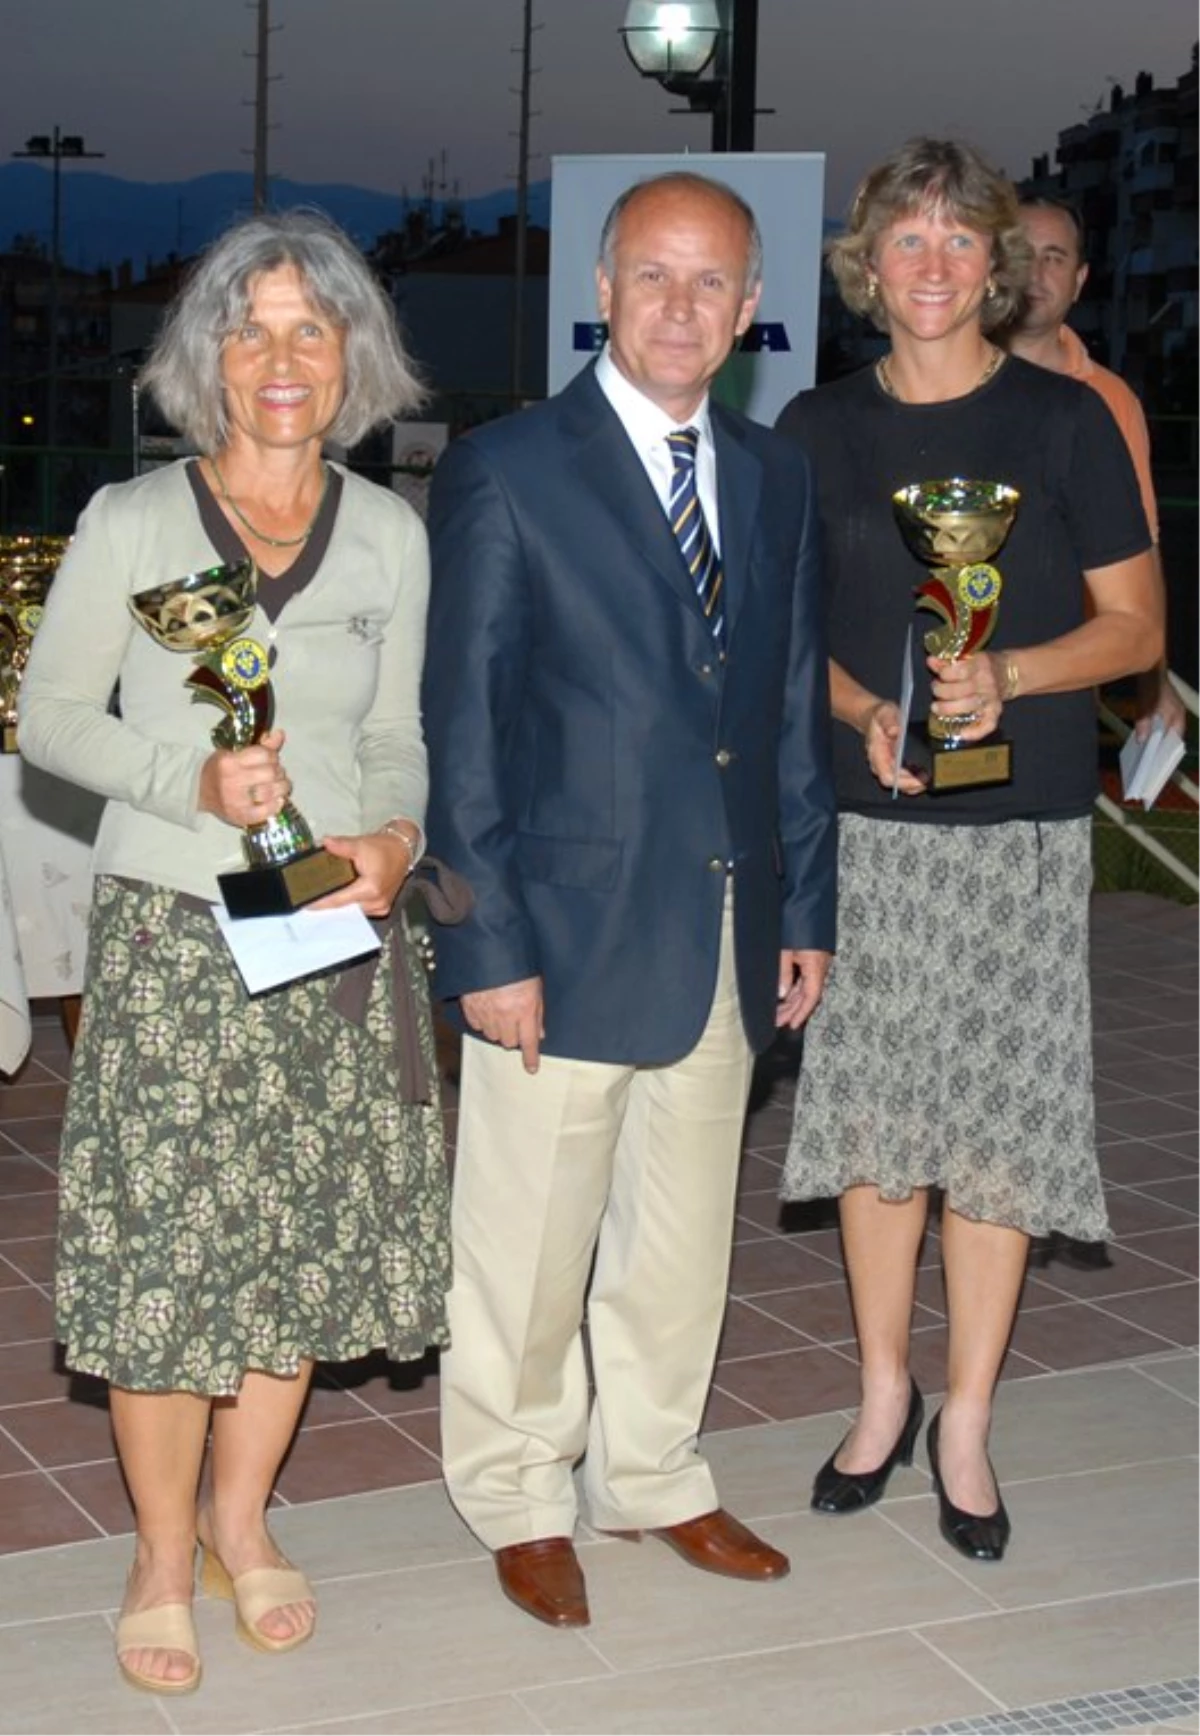 Buca Belediye Başkanlığı Veteran Tenis Turnuvasında Ödül Gecesi